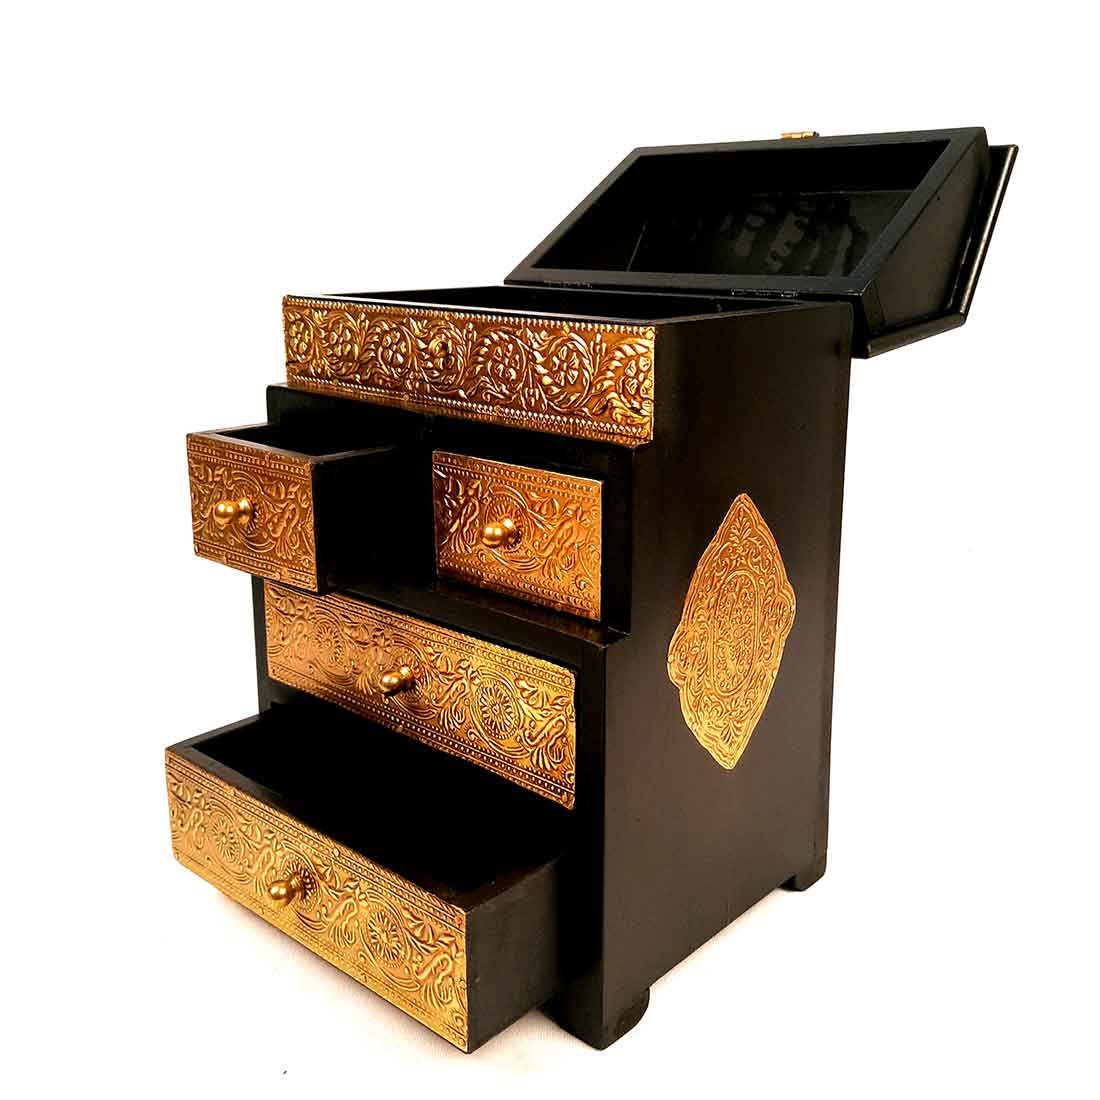 Wooden Jewelry Box | Brass Jewellery Organizer | Jewellery Drawers - 13 Inch - ApkaMart